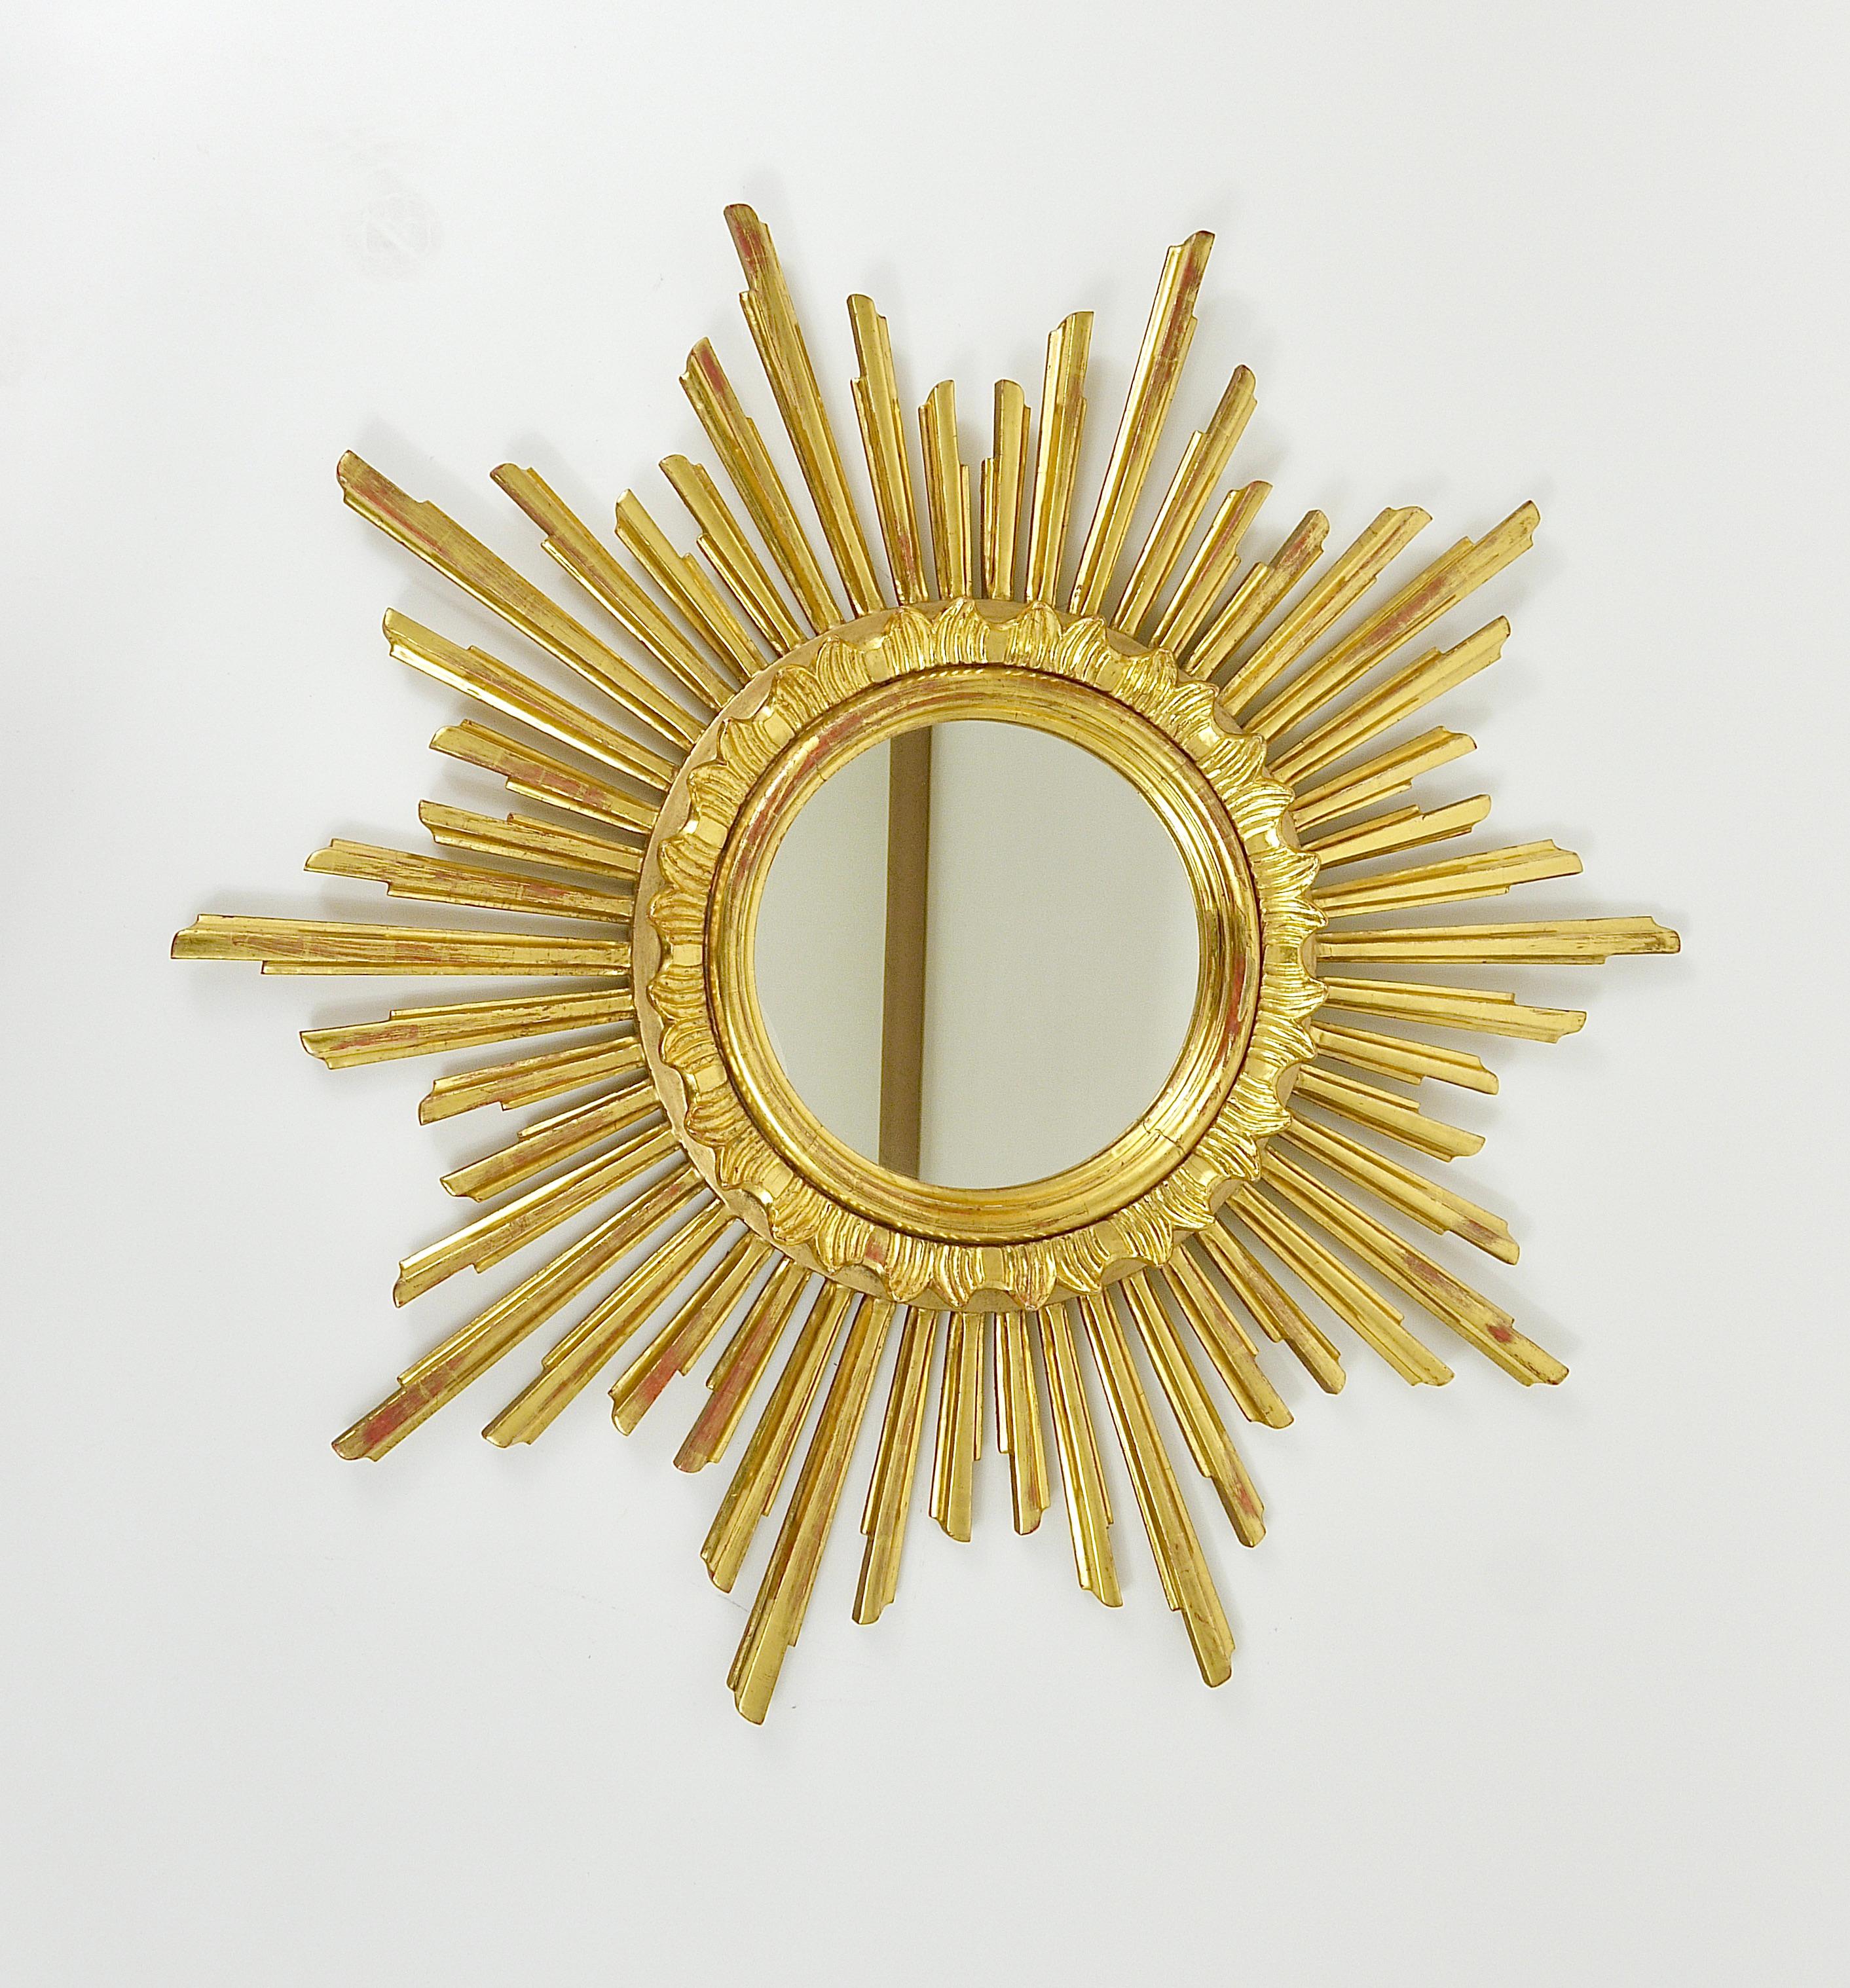 Eine schöne, große goldene Mitte des Jahrhunderts soleil sunburst starburst vergoldet Holzspiegel. Hergestellt in Frankreich, datiert auf die 1960er Jahre. Handgefertigt aus geschnitztem, vergoldetem Holz, in gutem Zustand. Gesamtdurchmesser 27